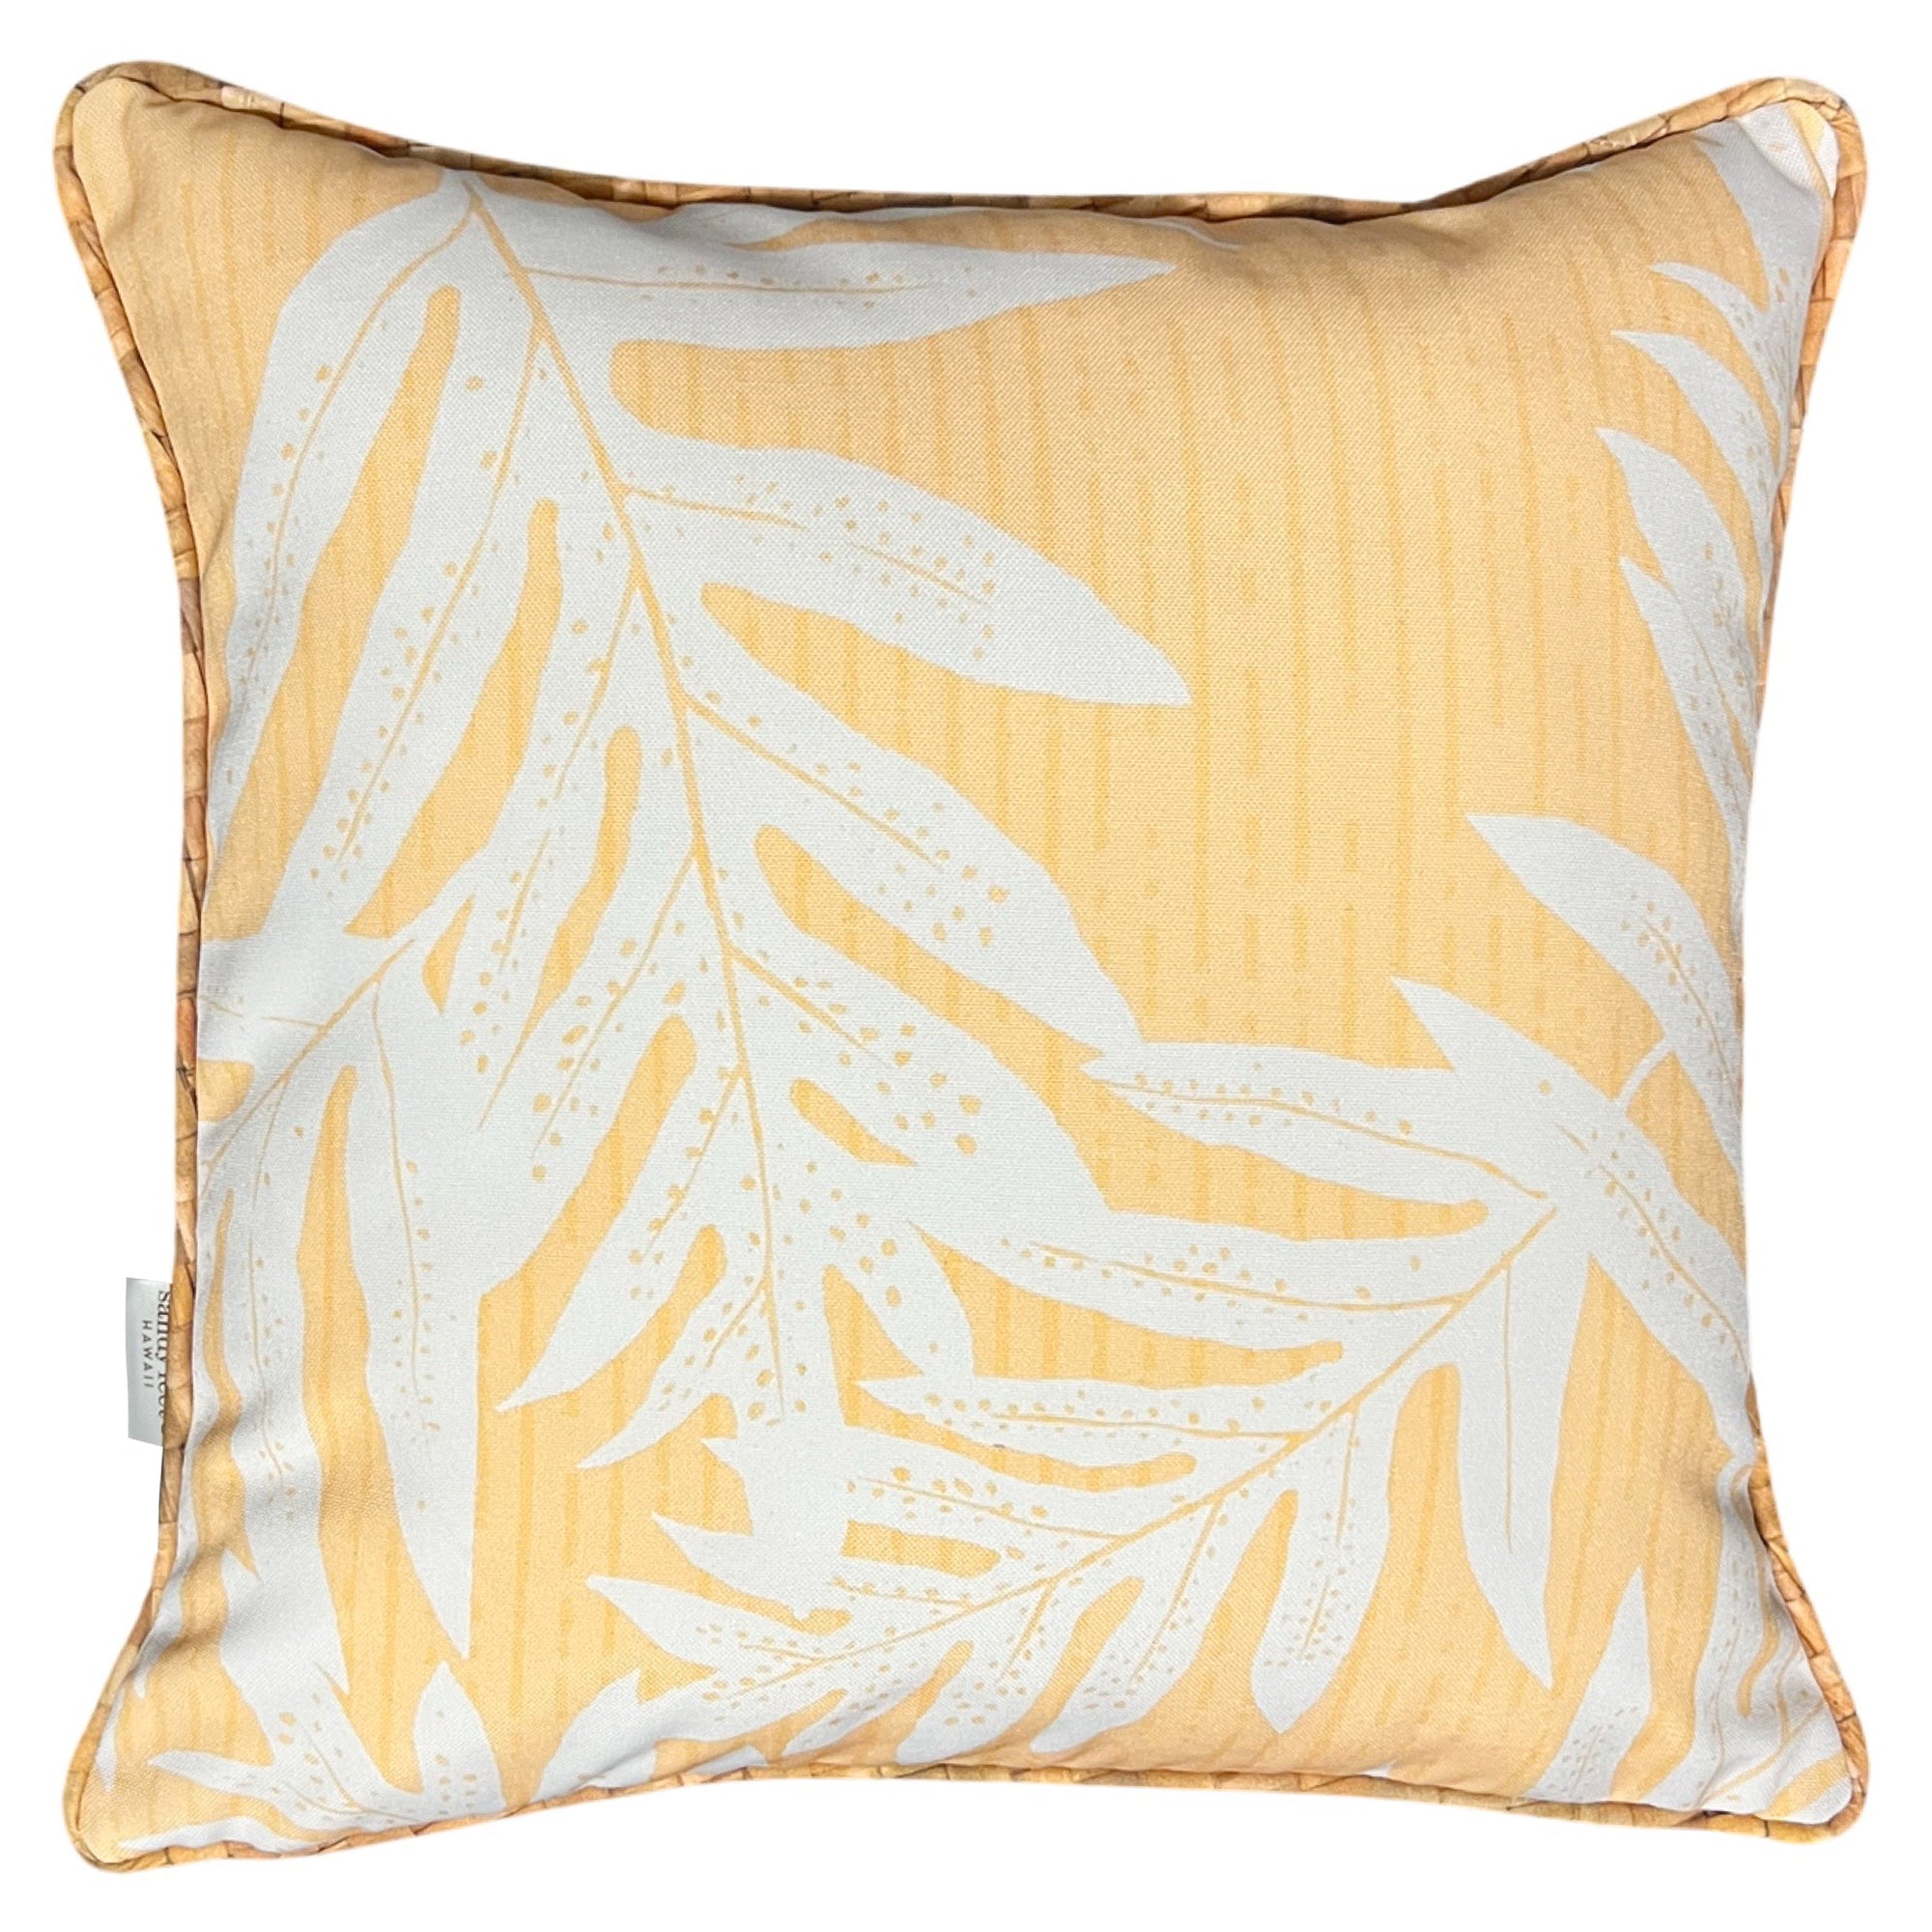 Creamy Yellow Laua‘e Pillow Cover